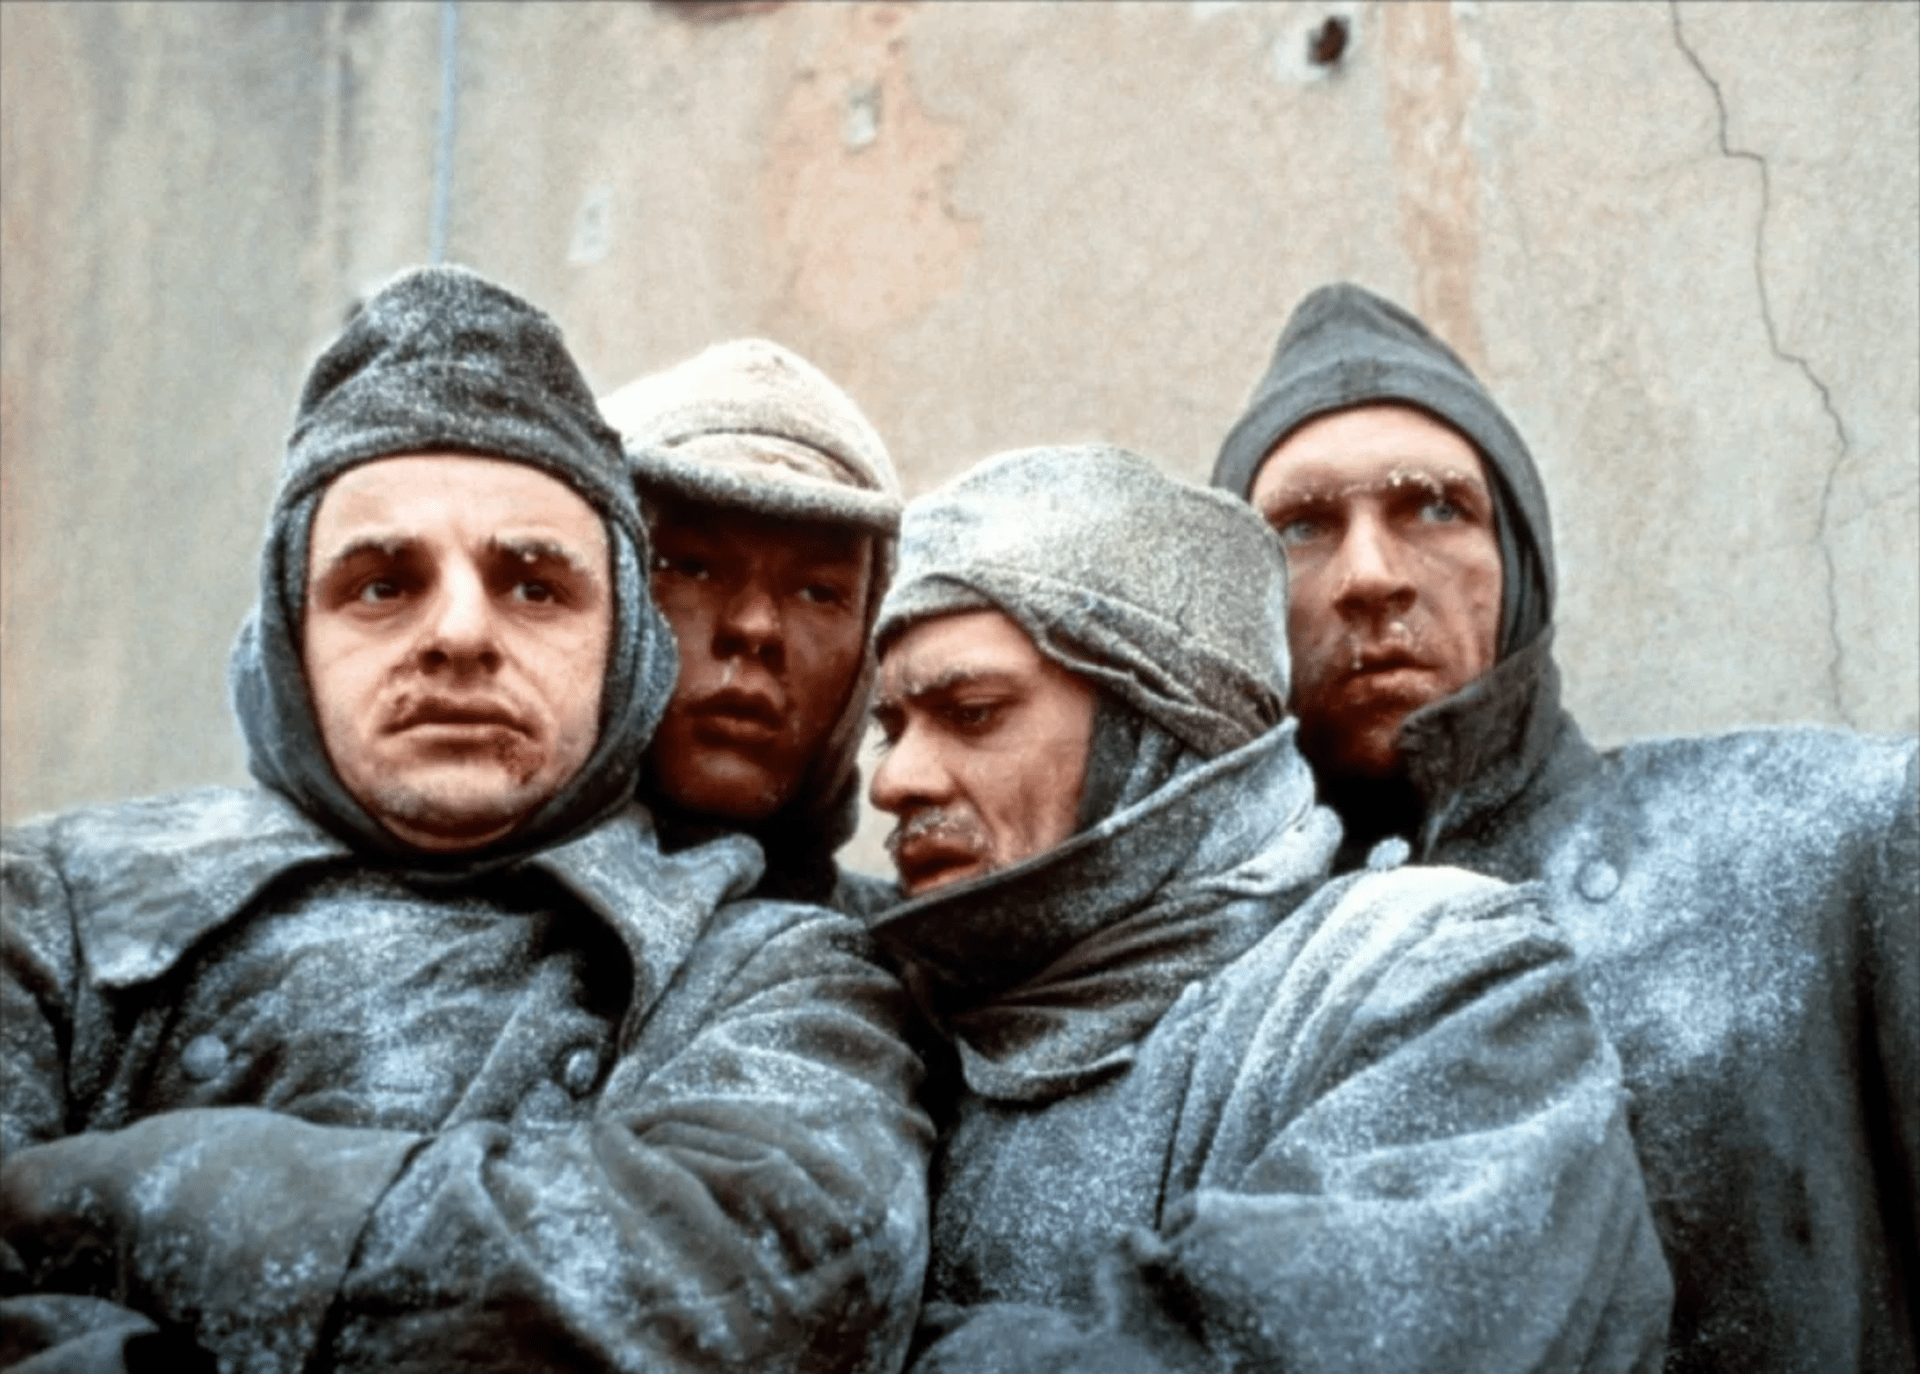 Bitvu o Stalinovo město zachytil film Stalingrad německého režiséra Josepha Vilsmaiera z roku 1993.